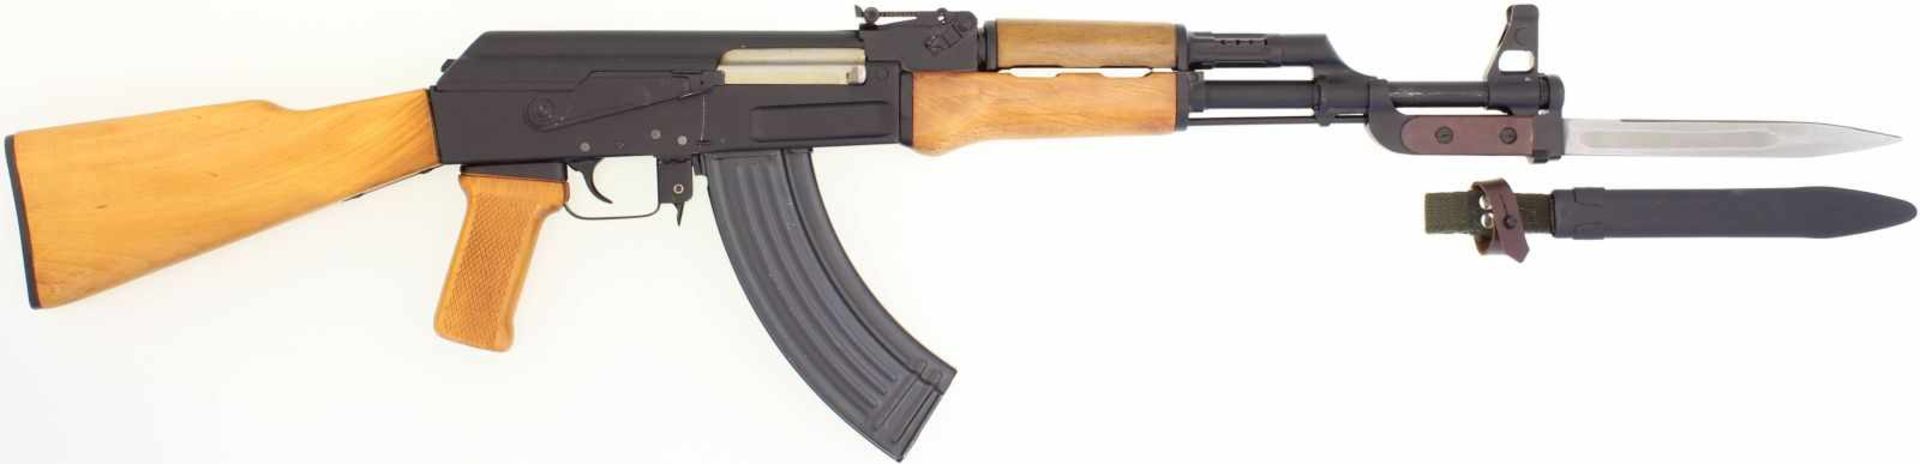 Selbstladebüchse, auf der Basis der AK 47, Kal. 7.62x39@ LL 420mm, TL 875mm. Gefrästes Stahlgehäuse,